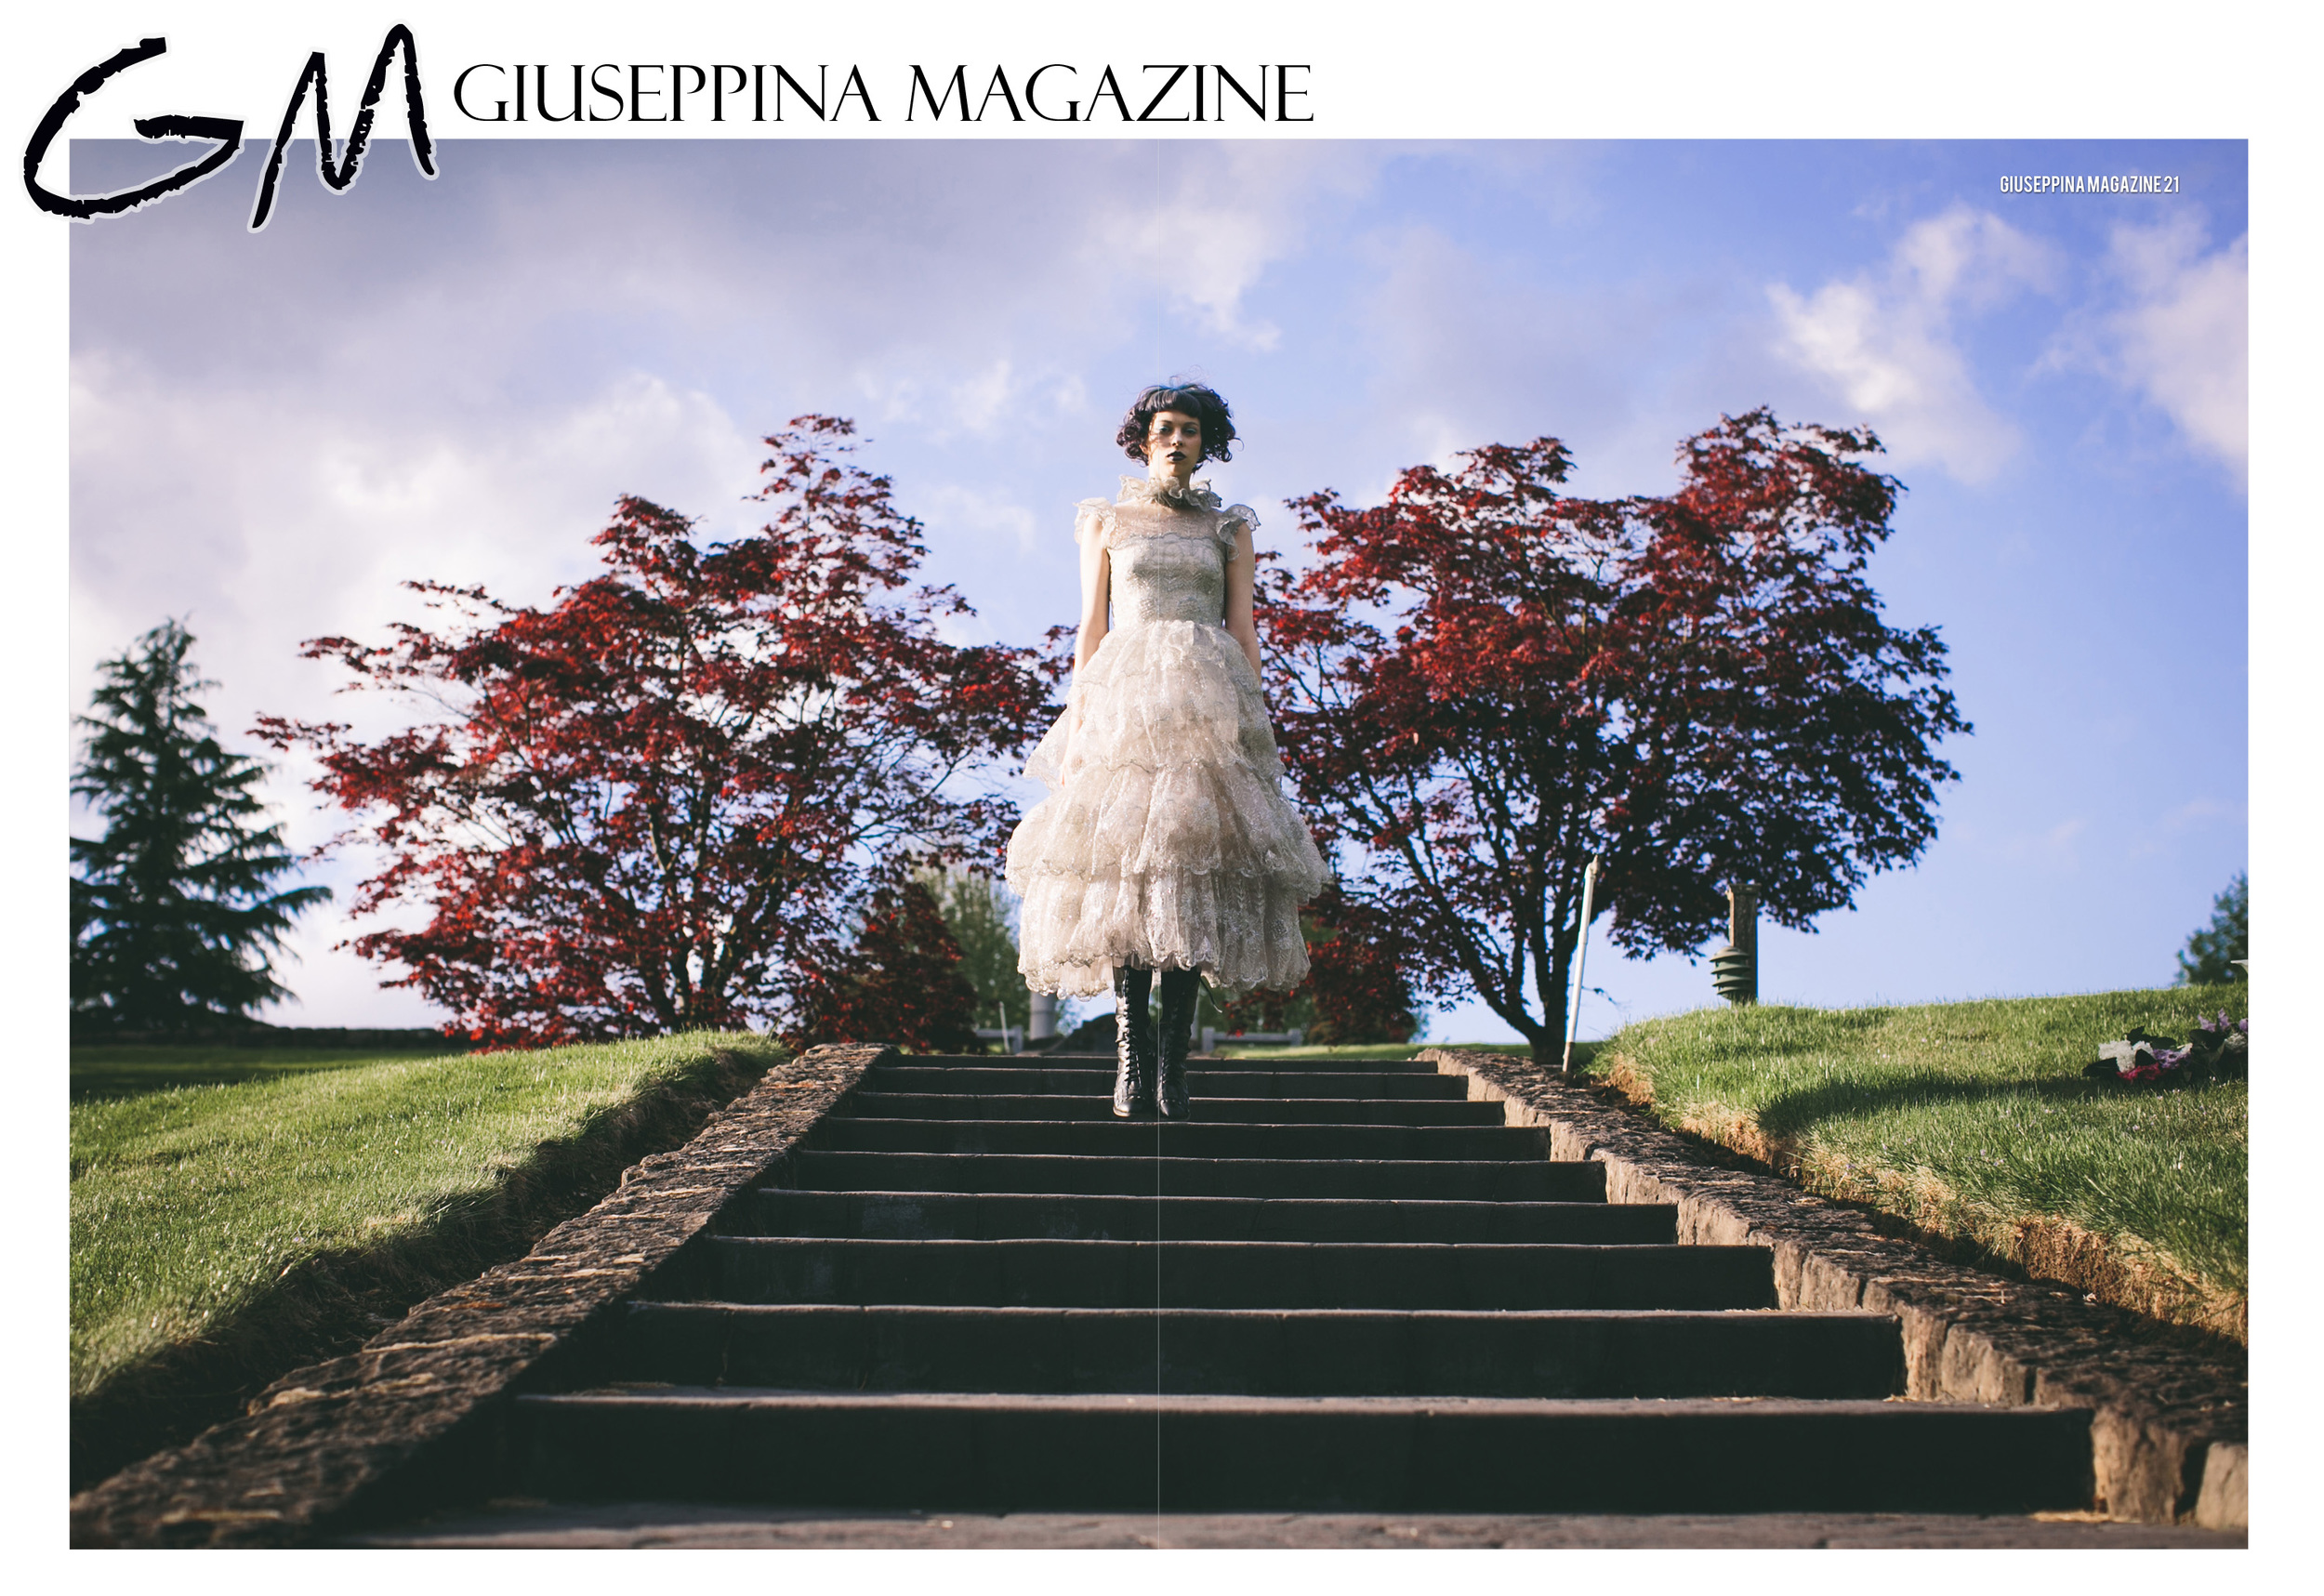 Giuseppina Magazine + Myles Katherine Photography